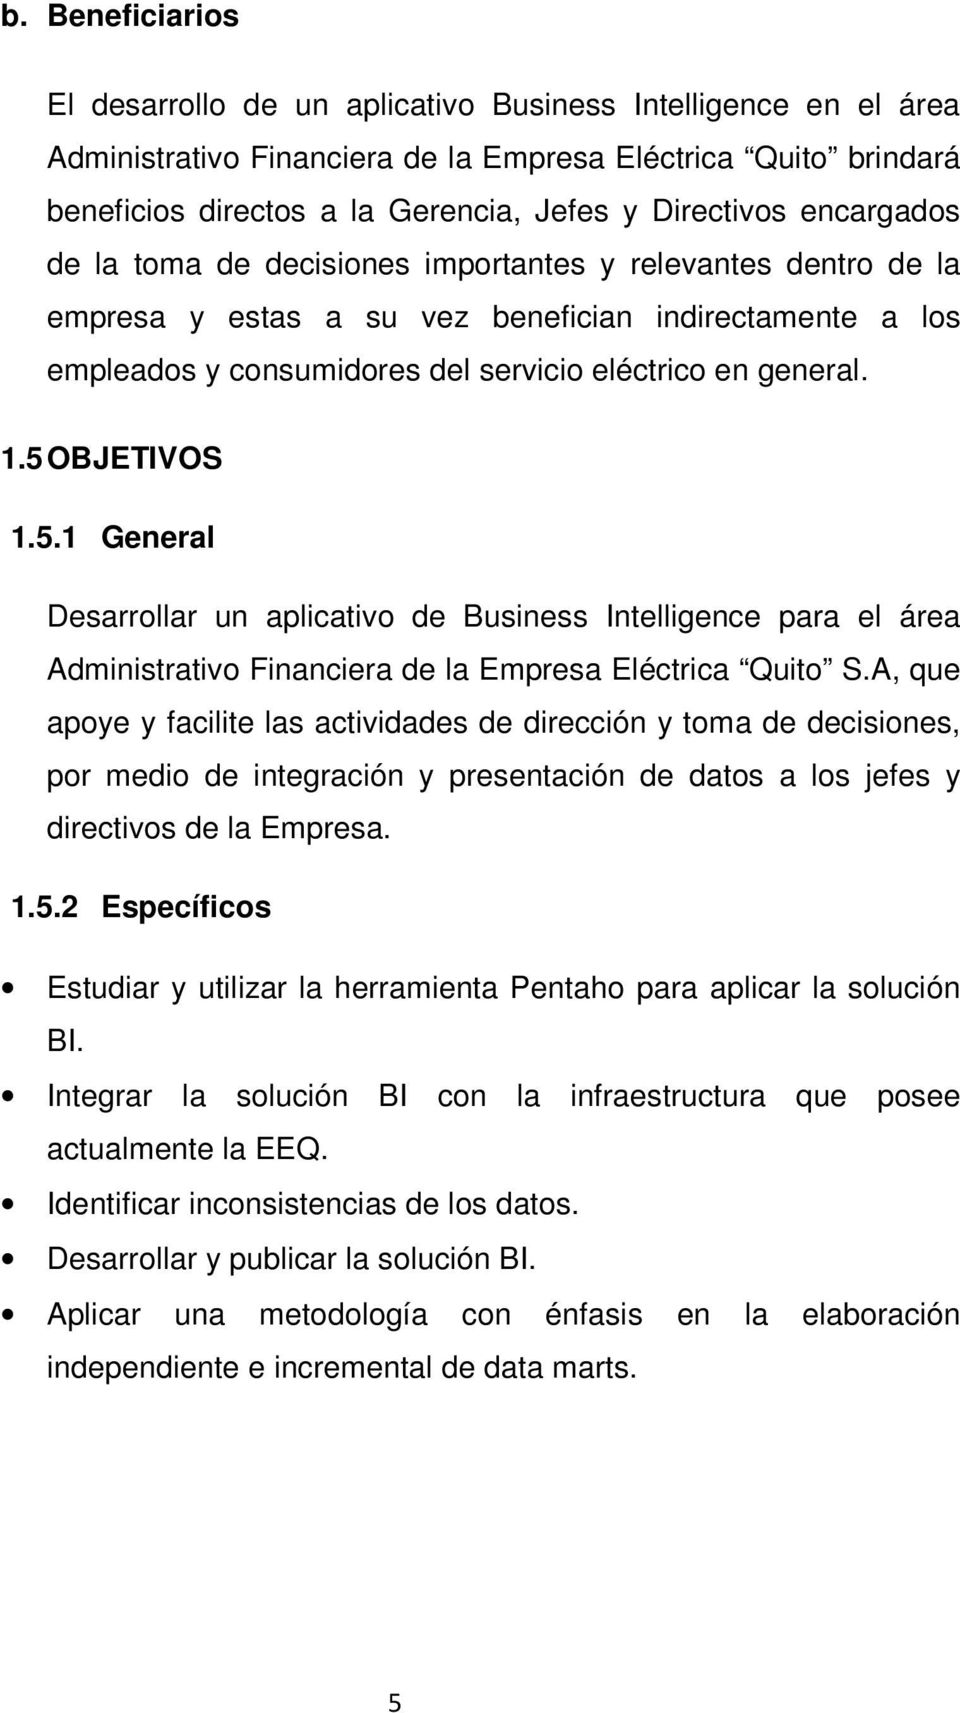 5 OBJETIVOS 1.5.1 General Desarrollar un aplicativo de Business Intelligence para el área Administrativo Financiera de la Empresa Eléctrica Quito S.